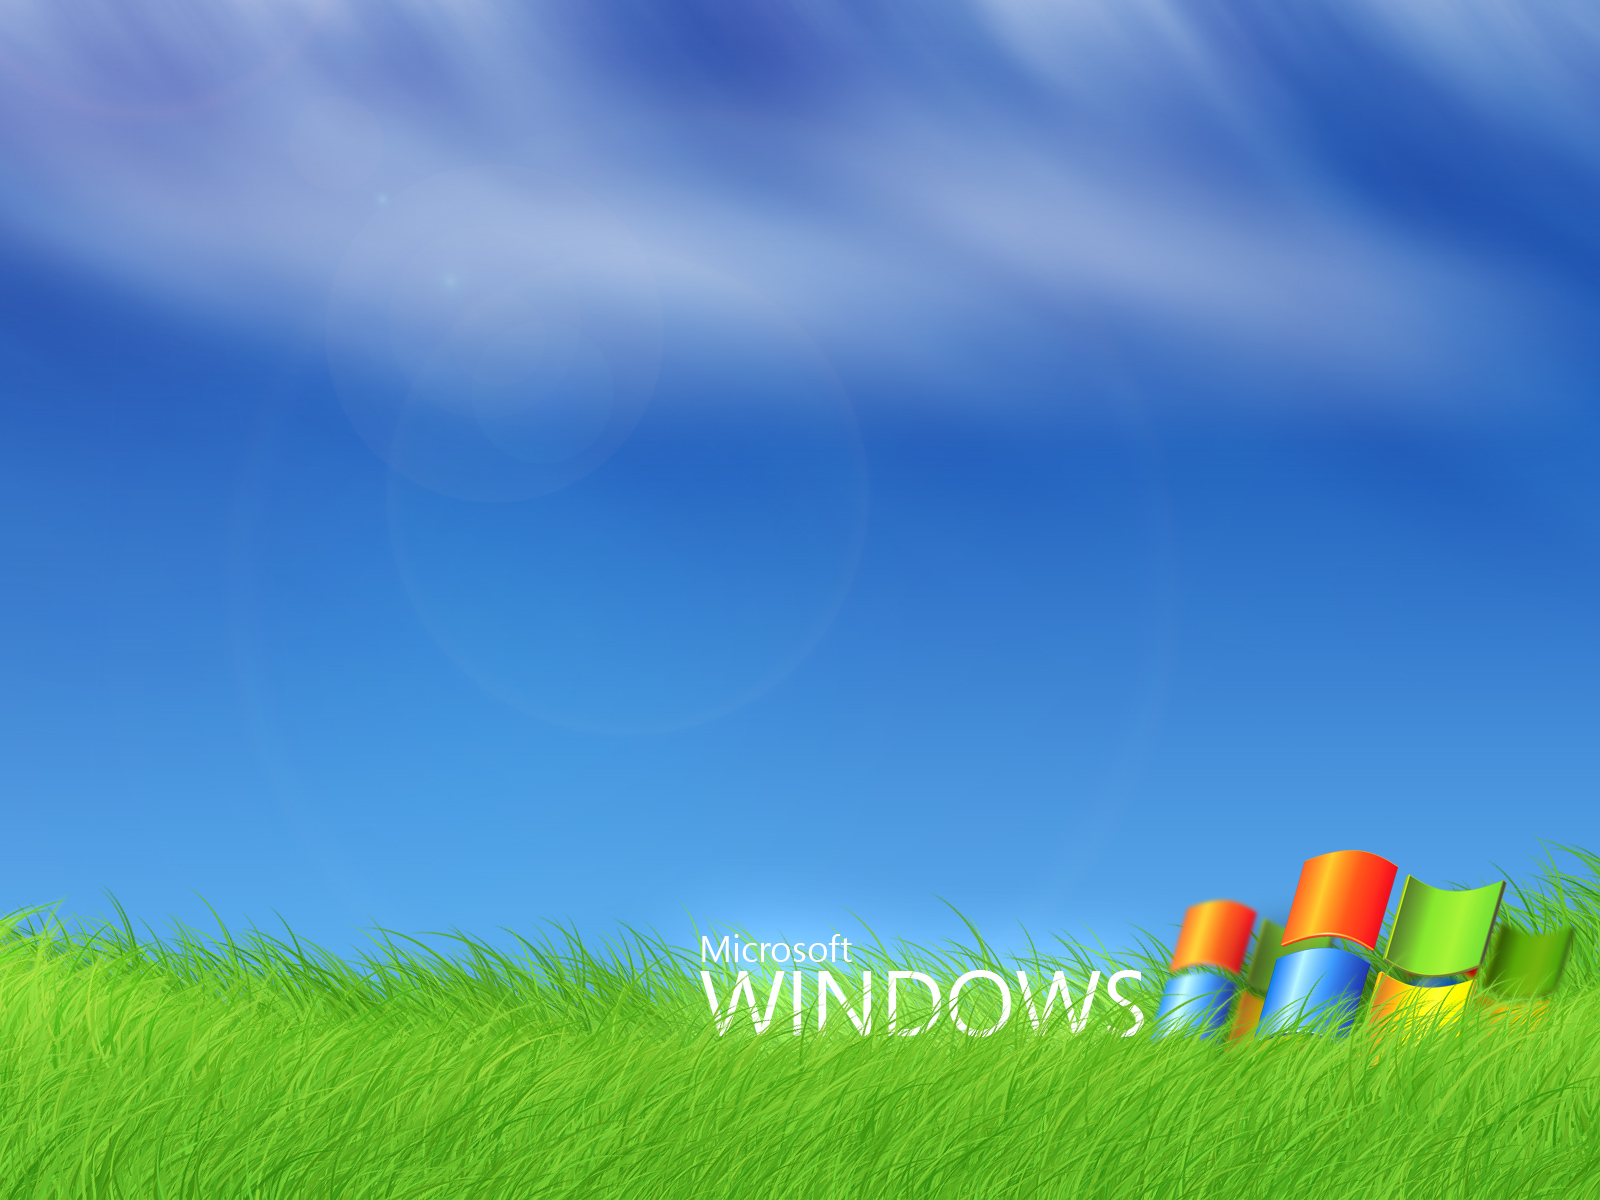 http://4.bp.blogspot.com/-FWtCoybUmac/T_7yrs9QBpI/AAAAAAAAAEs/Ud286f5J42U/s1600/microsoft_windows-normal.jpg